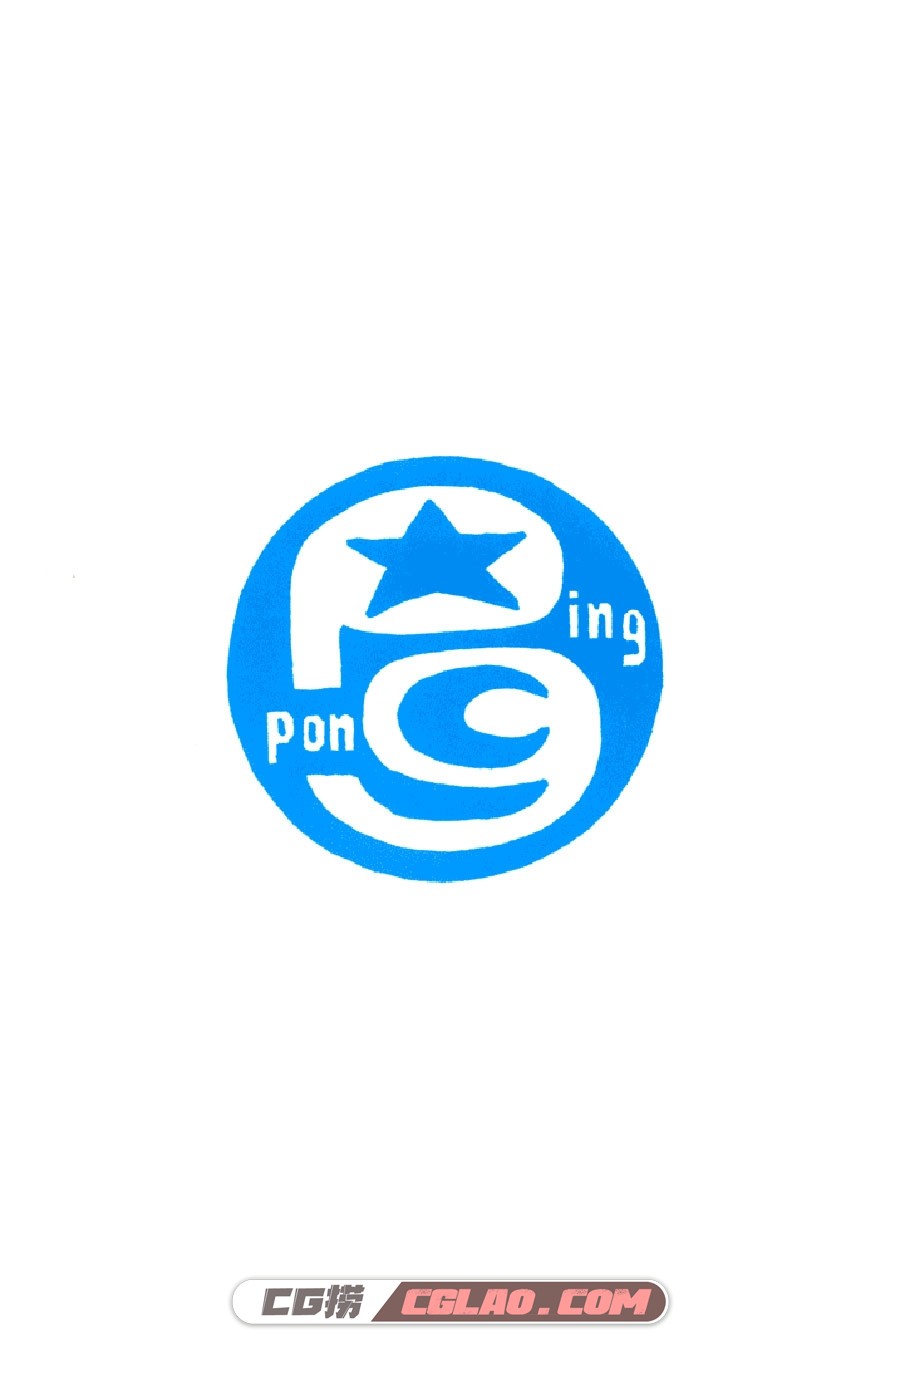 乒乓pingpong 松本大洋 1-5卷 漫画全集完结下载 百度网盘,PingPong_v01c01p002.jpg